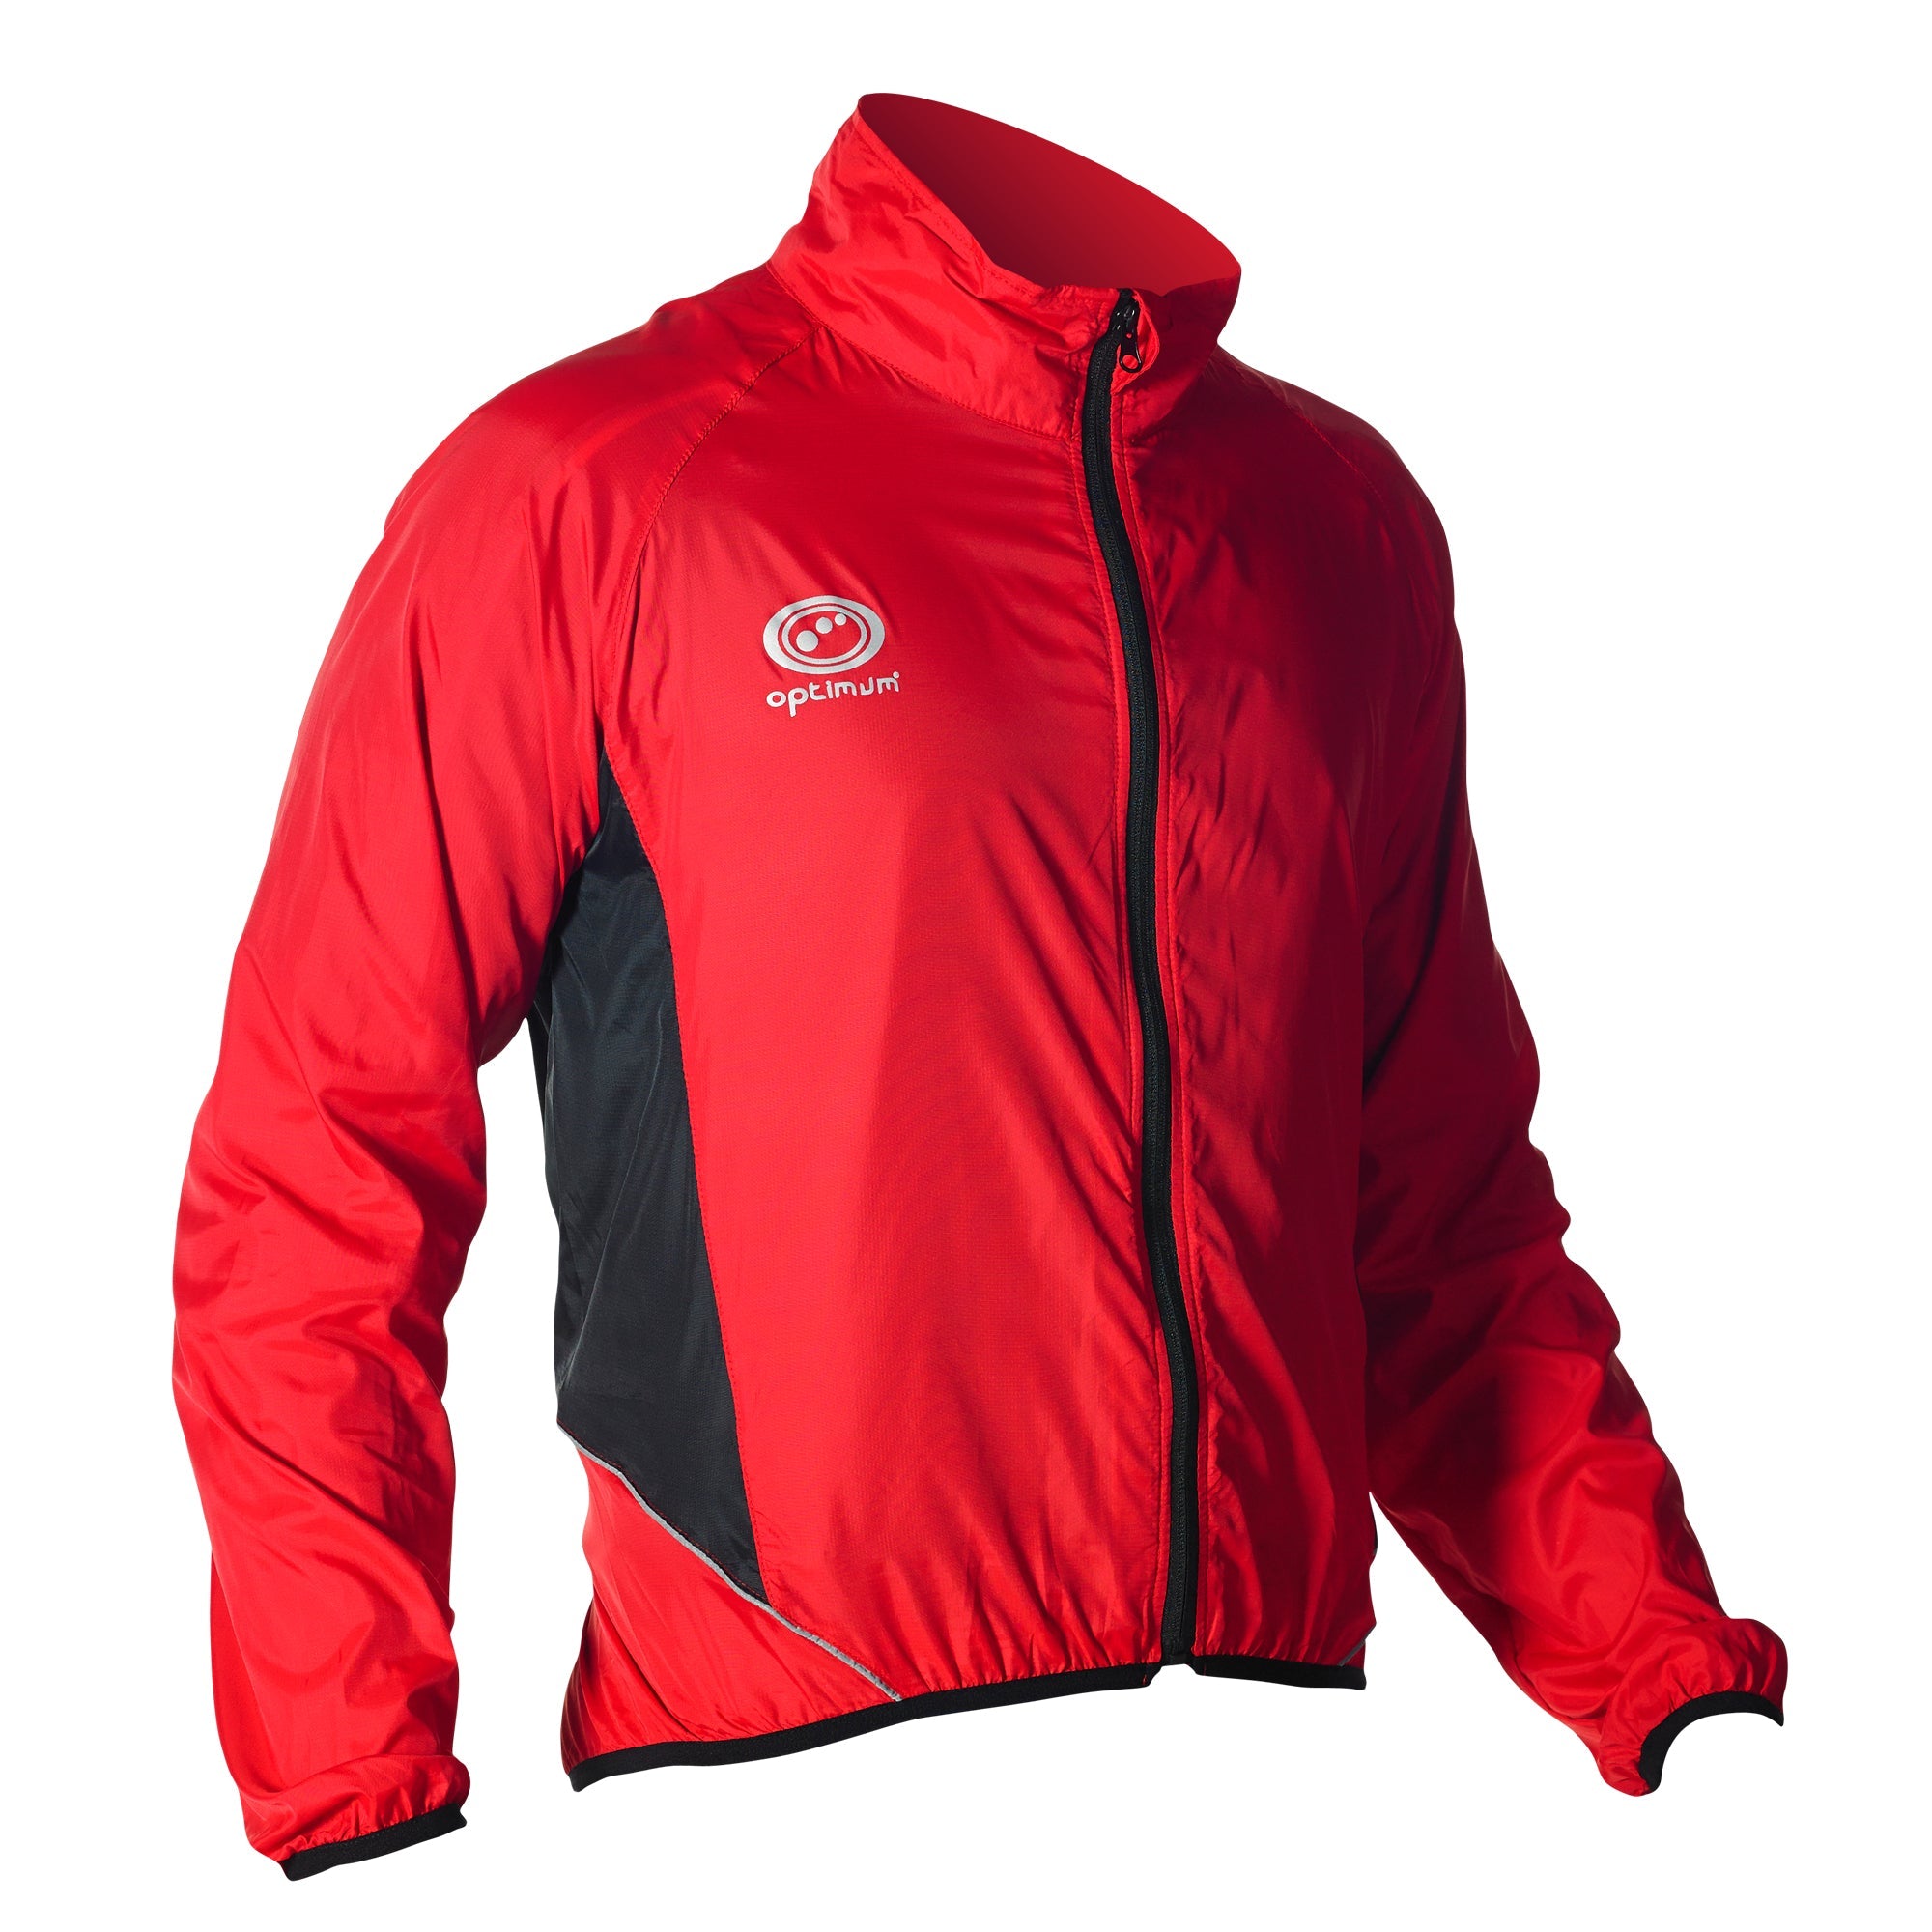 Hawkley Stowaway Rain Jacket Red - Optimum